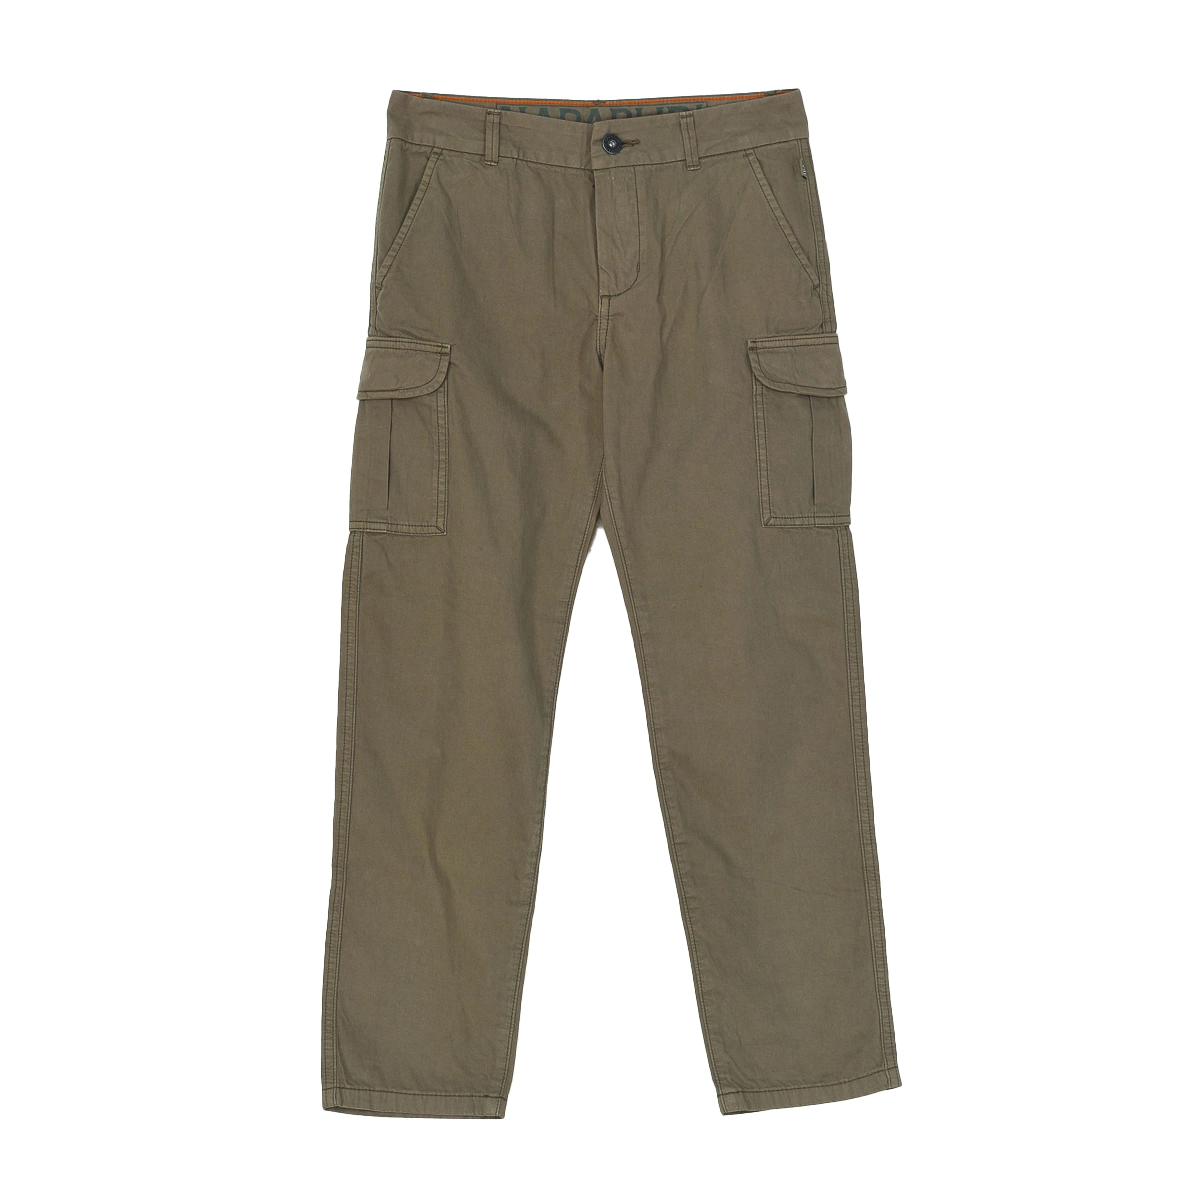 Pantalones K Moab Sum estilo cargo Napapijri N0YIKZ niño Talla: 10 AÑOS Color: Verde N0YIKZ-GD6.10 AÑOS